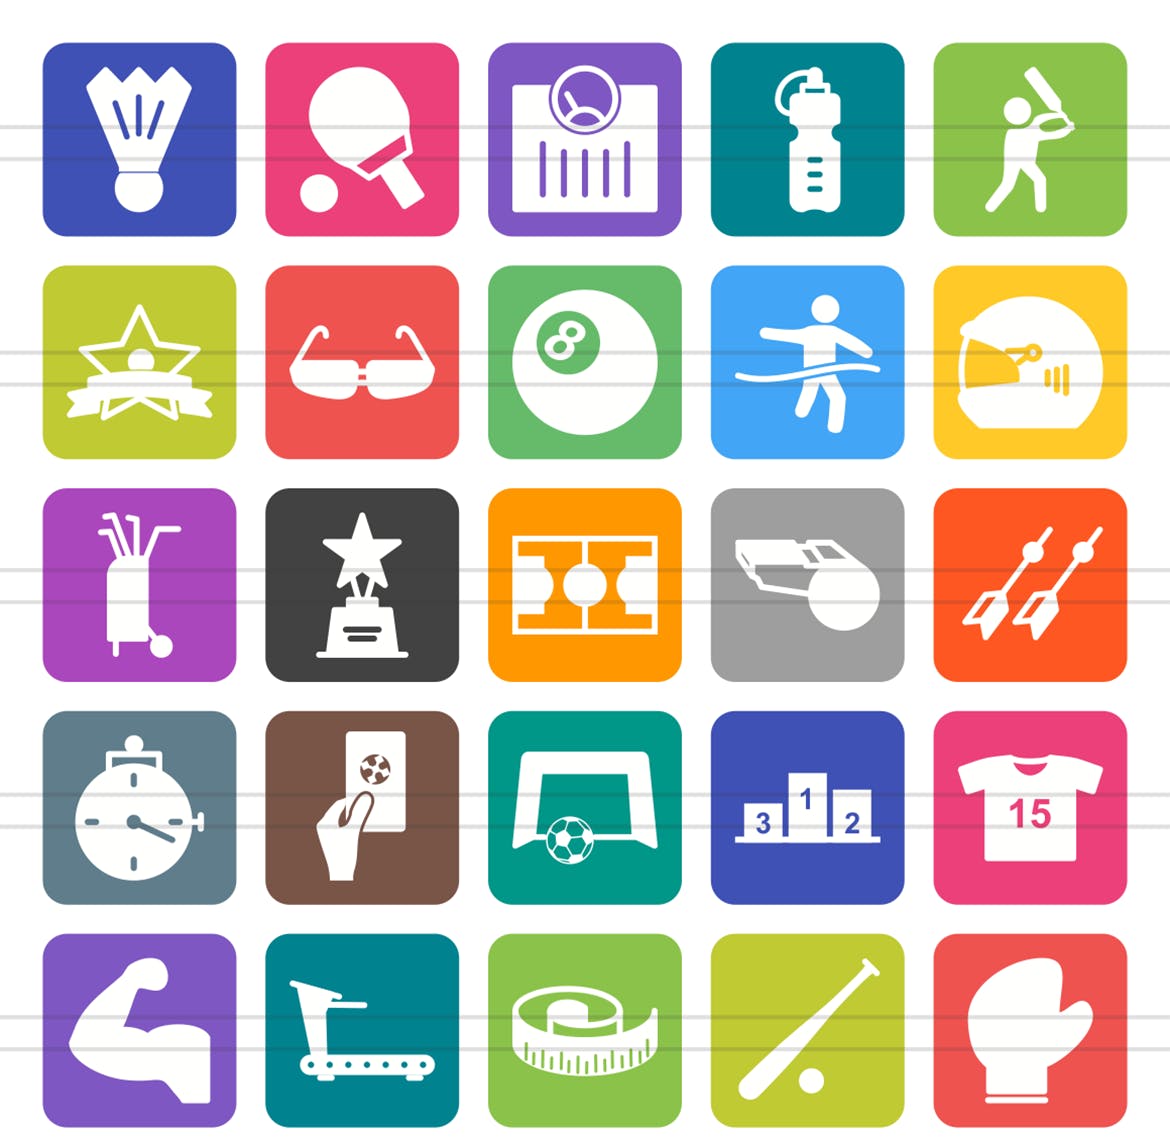 50枚健身&运动主题圆角图标素材 50 Fitness & Sports Flat Round Corner Icons插图(1)